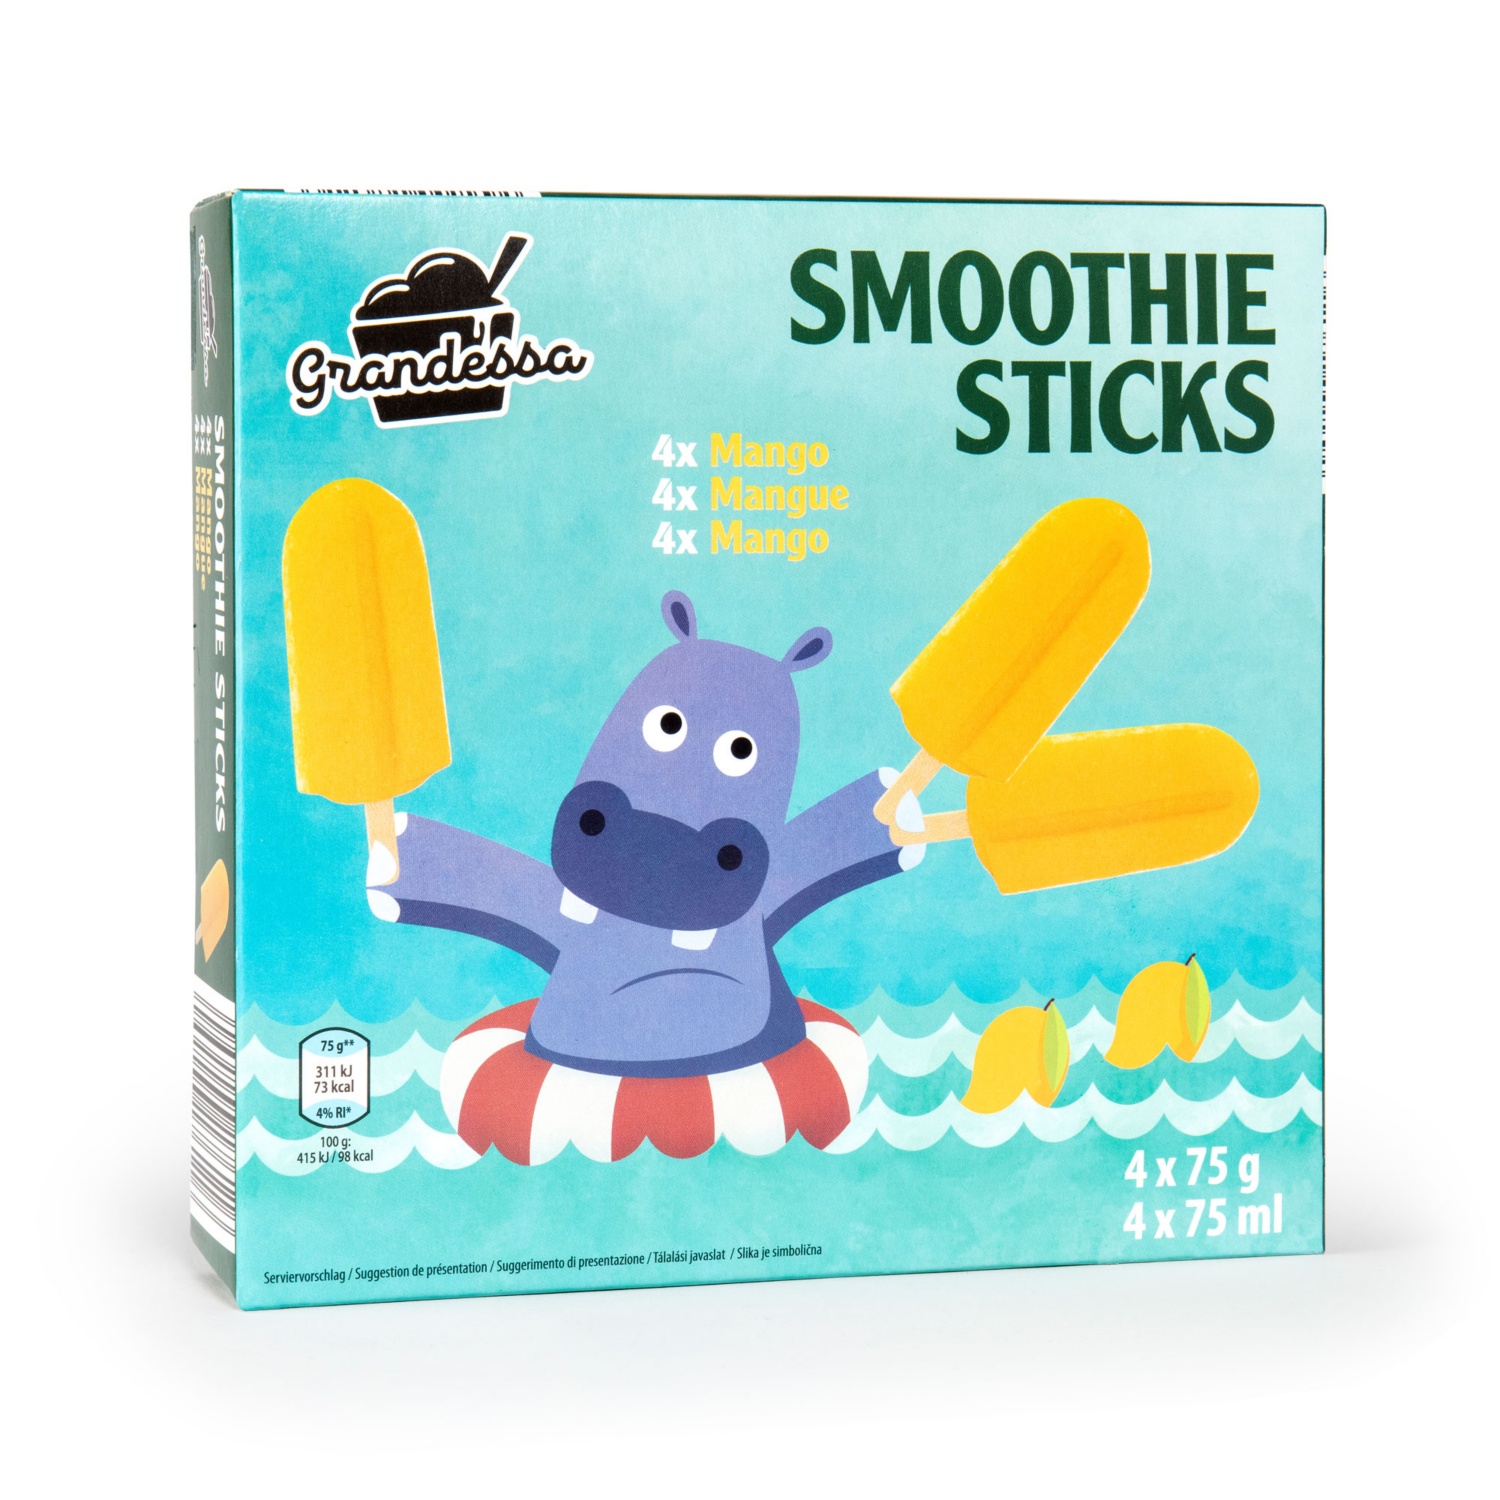 GRANDESSA Smoothie Sticks, Mango